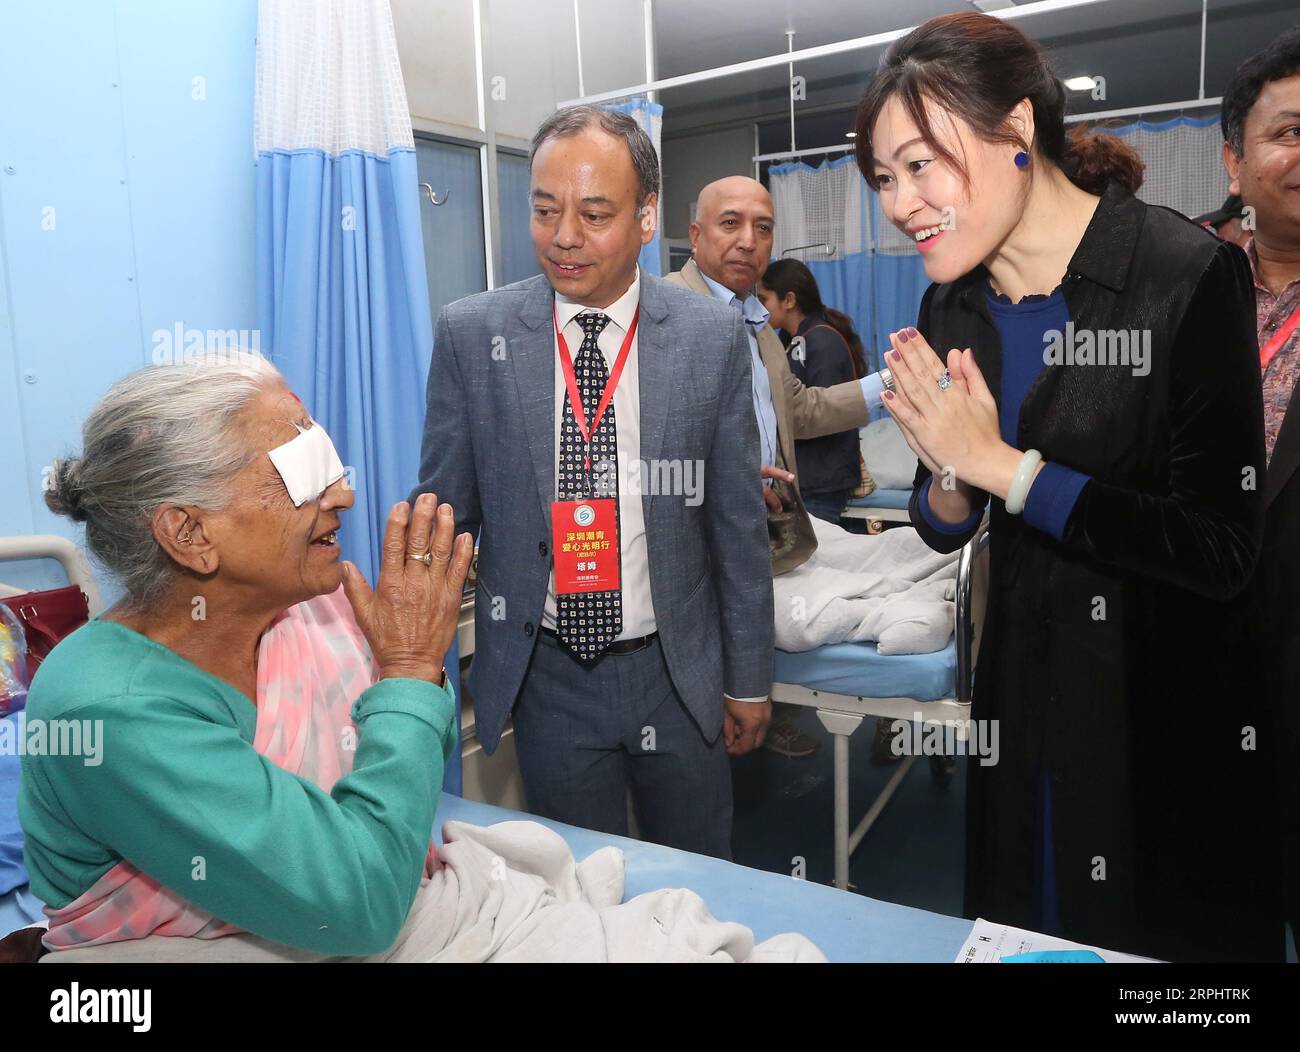 191118 -- KATMANDOU, le 18 novembre 2019 -- l'ambassadeur de Chine au Népal, Hou Yanqi R, rend visite à un patient qui a subi une chirurgie de la cataracte à l'hôpital Manmohan Memorial de Katmandou, Népal, le 17 novembre 2019. L’équipe médicale chinoise a fourni gratuitement des chirurgies de la cataracte à plus de 50 patients népalais au cours des deux derniers jours ici dans le cadre des programmes visant à renforcer la coopération médicale entre les deux pays. NÉPAL-KATMANDOU-CHINOIS MÉDECINS-LIBRE CHIRURGIE DE LA CATARACTE SUNILXSHARMA PUBLICATIONXNOTXINXCHN Banque D'Images